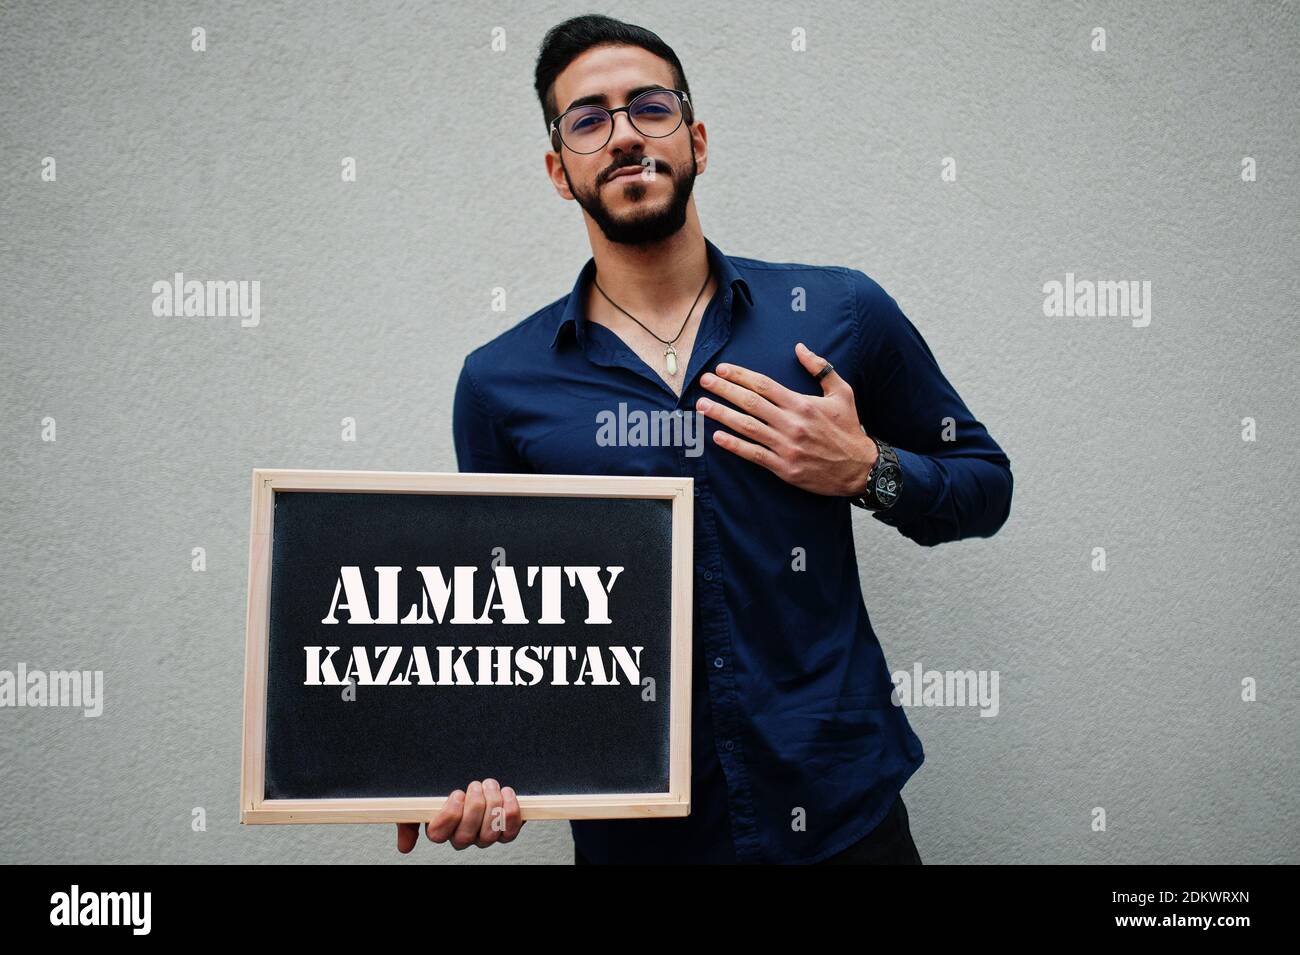 Uomo arabo indossare camicia blu e occhiali tenere tavola con l'iscrizione Almaty Kazakhstan. Le città più grandi del mondo islamico concetto. Foto Stock